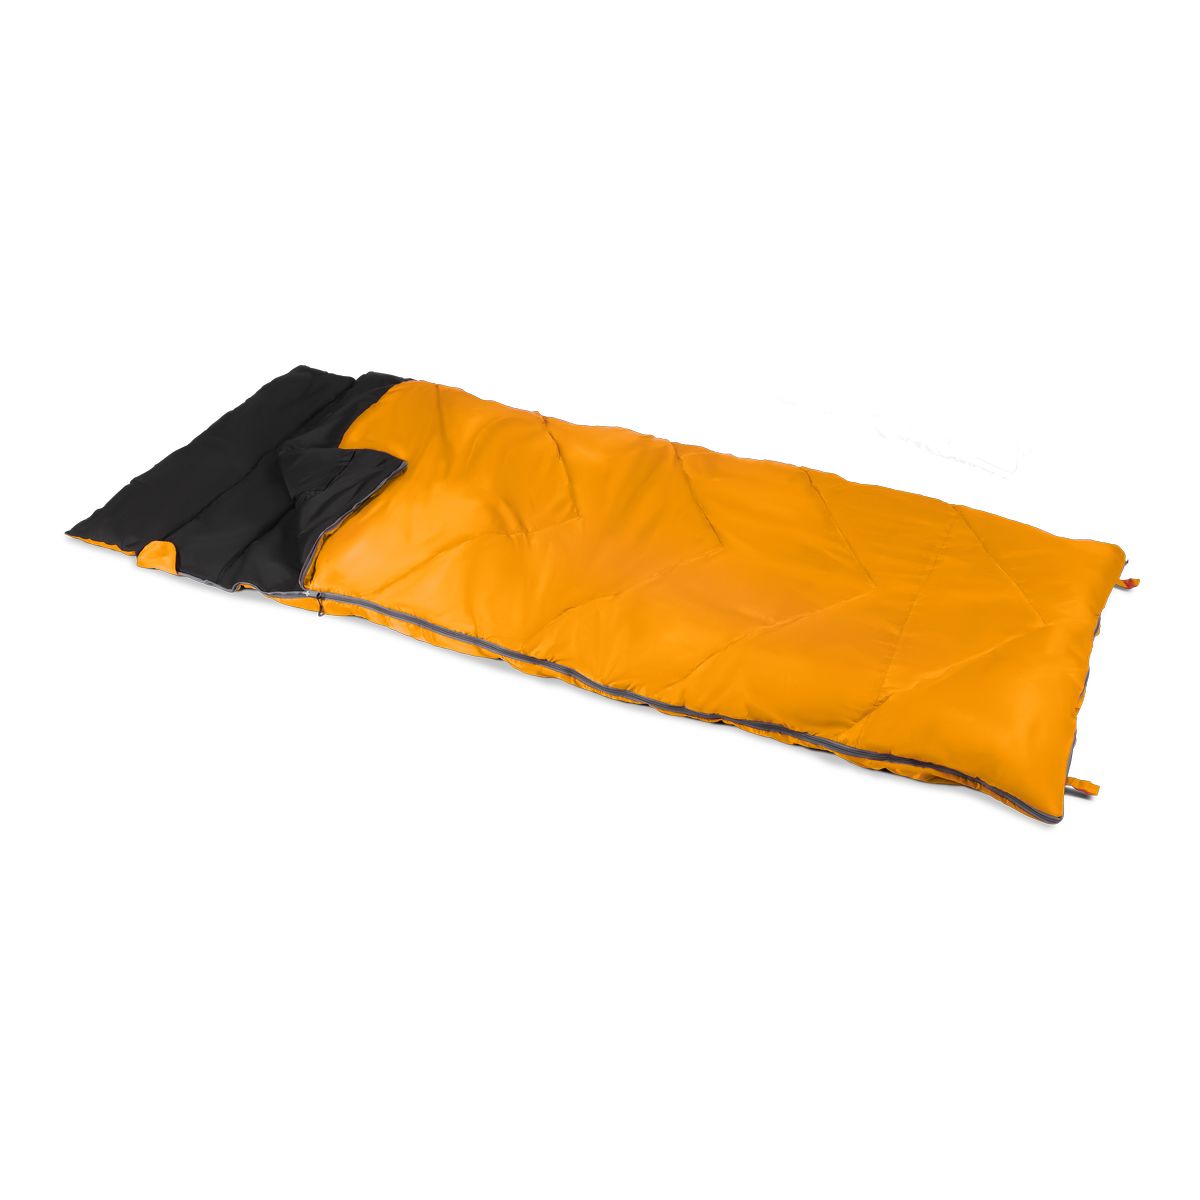 Kampa Garda 4 XL Sleeping Bag